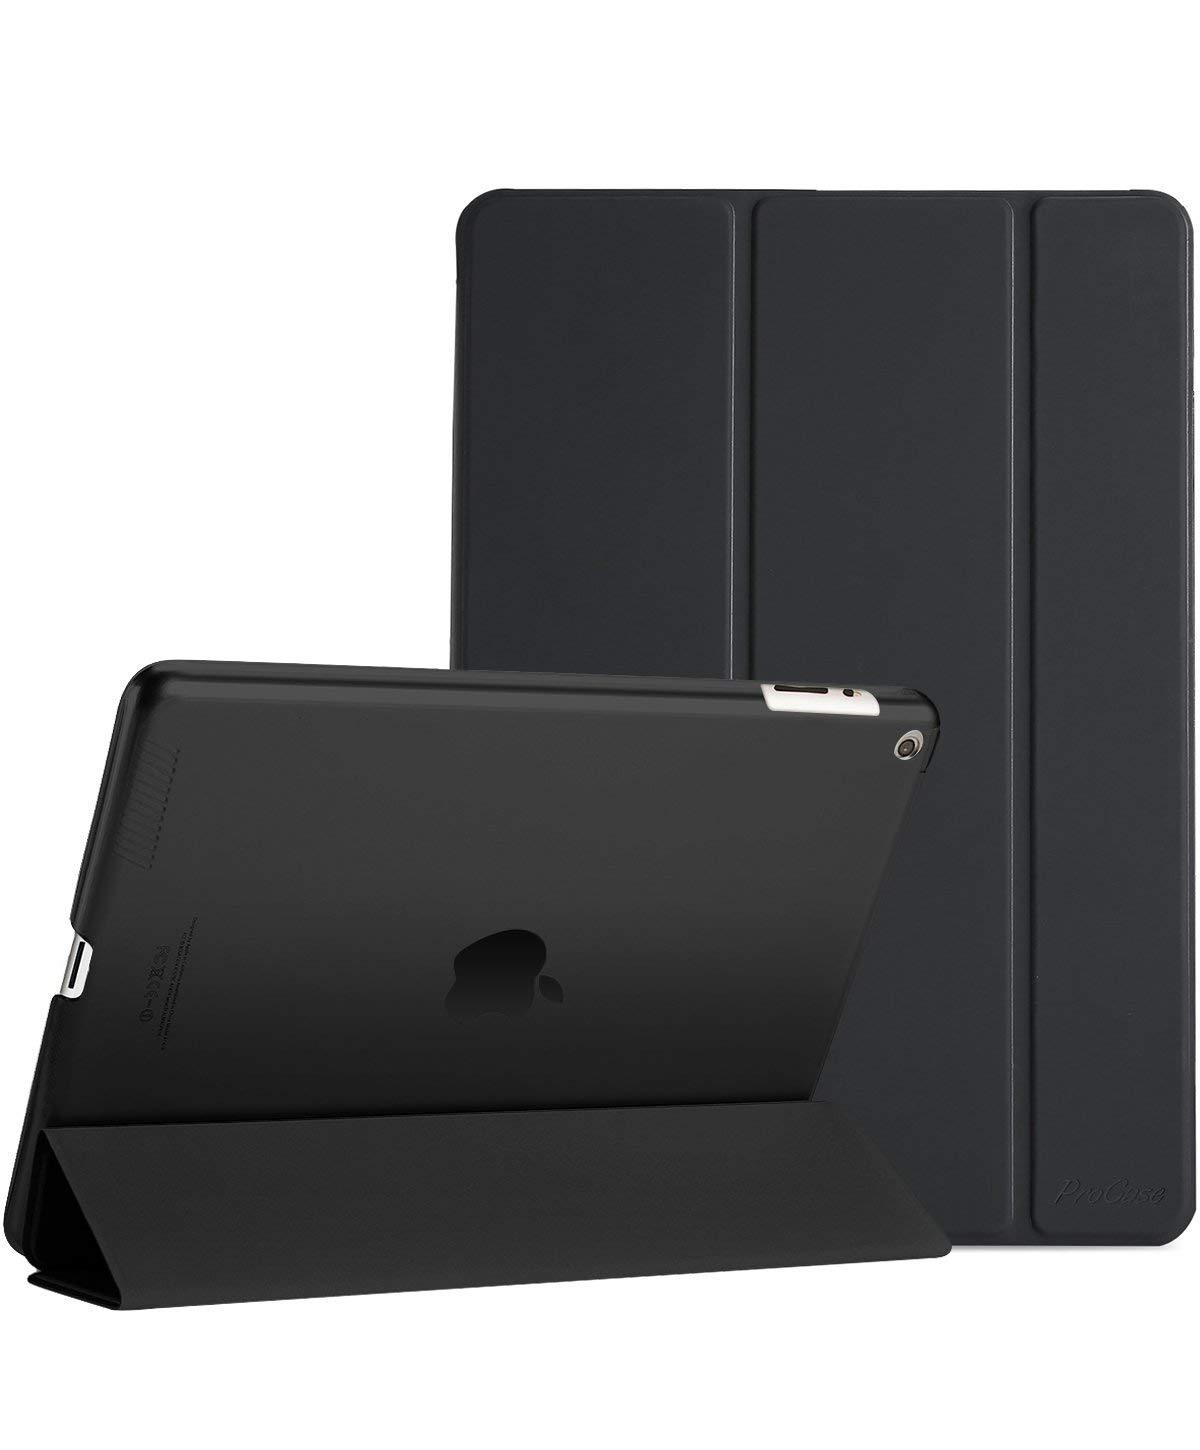 iPad 2 3 4 Generation Slim Case